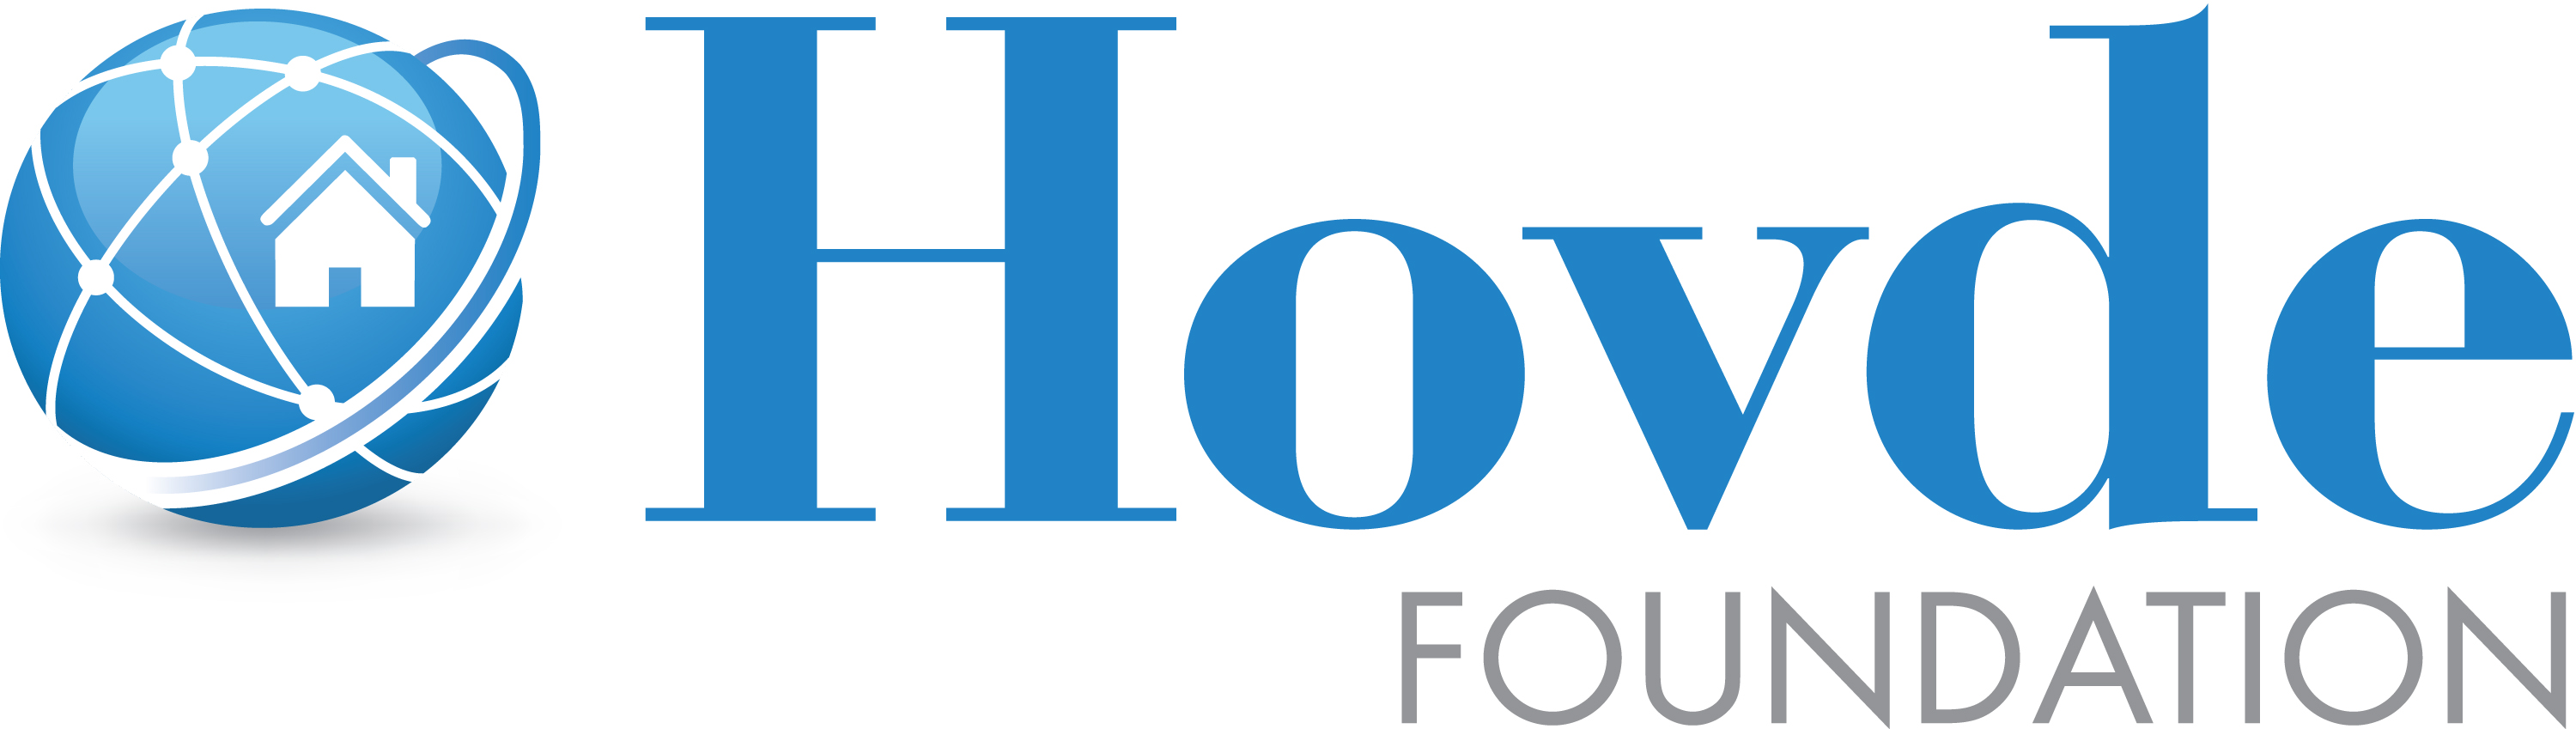 Hovde Foundation